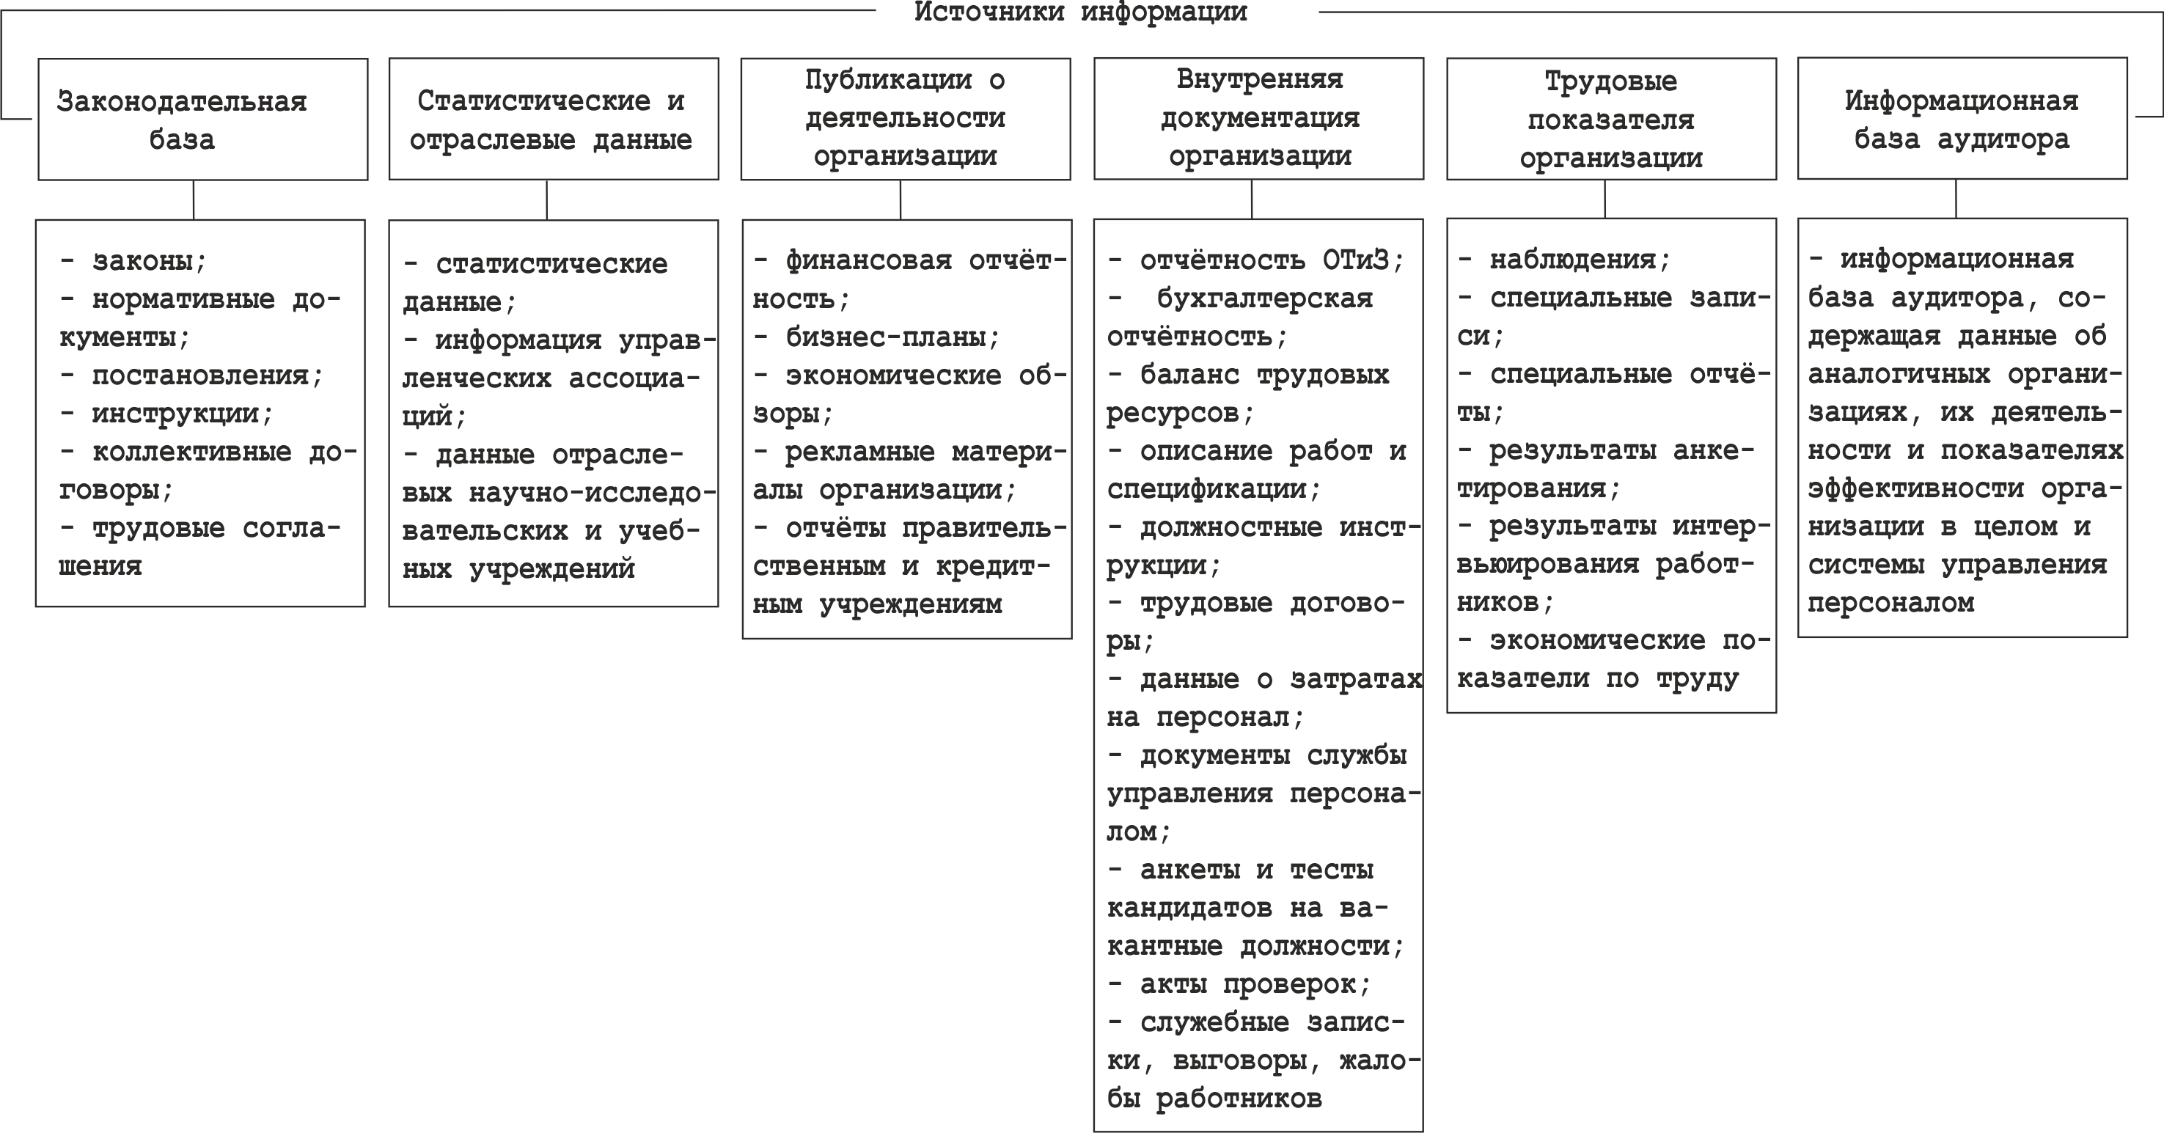 Реферат: Методика получения аудиторских доказательств. Классификационные формы экономического контроля в Украине